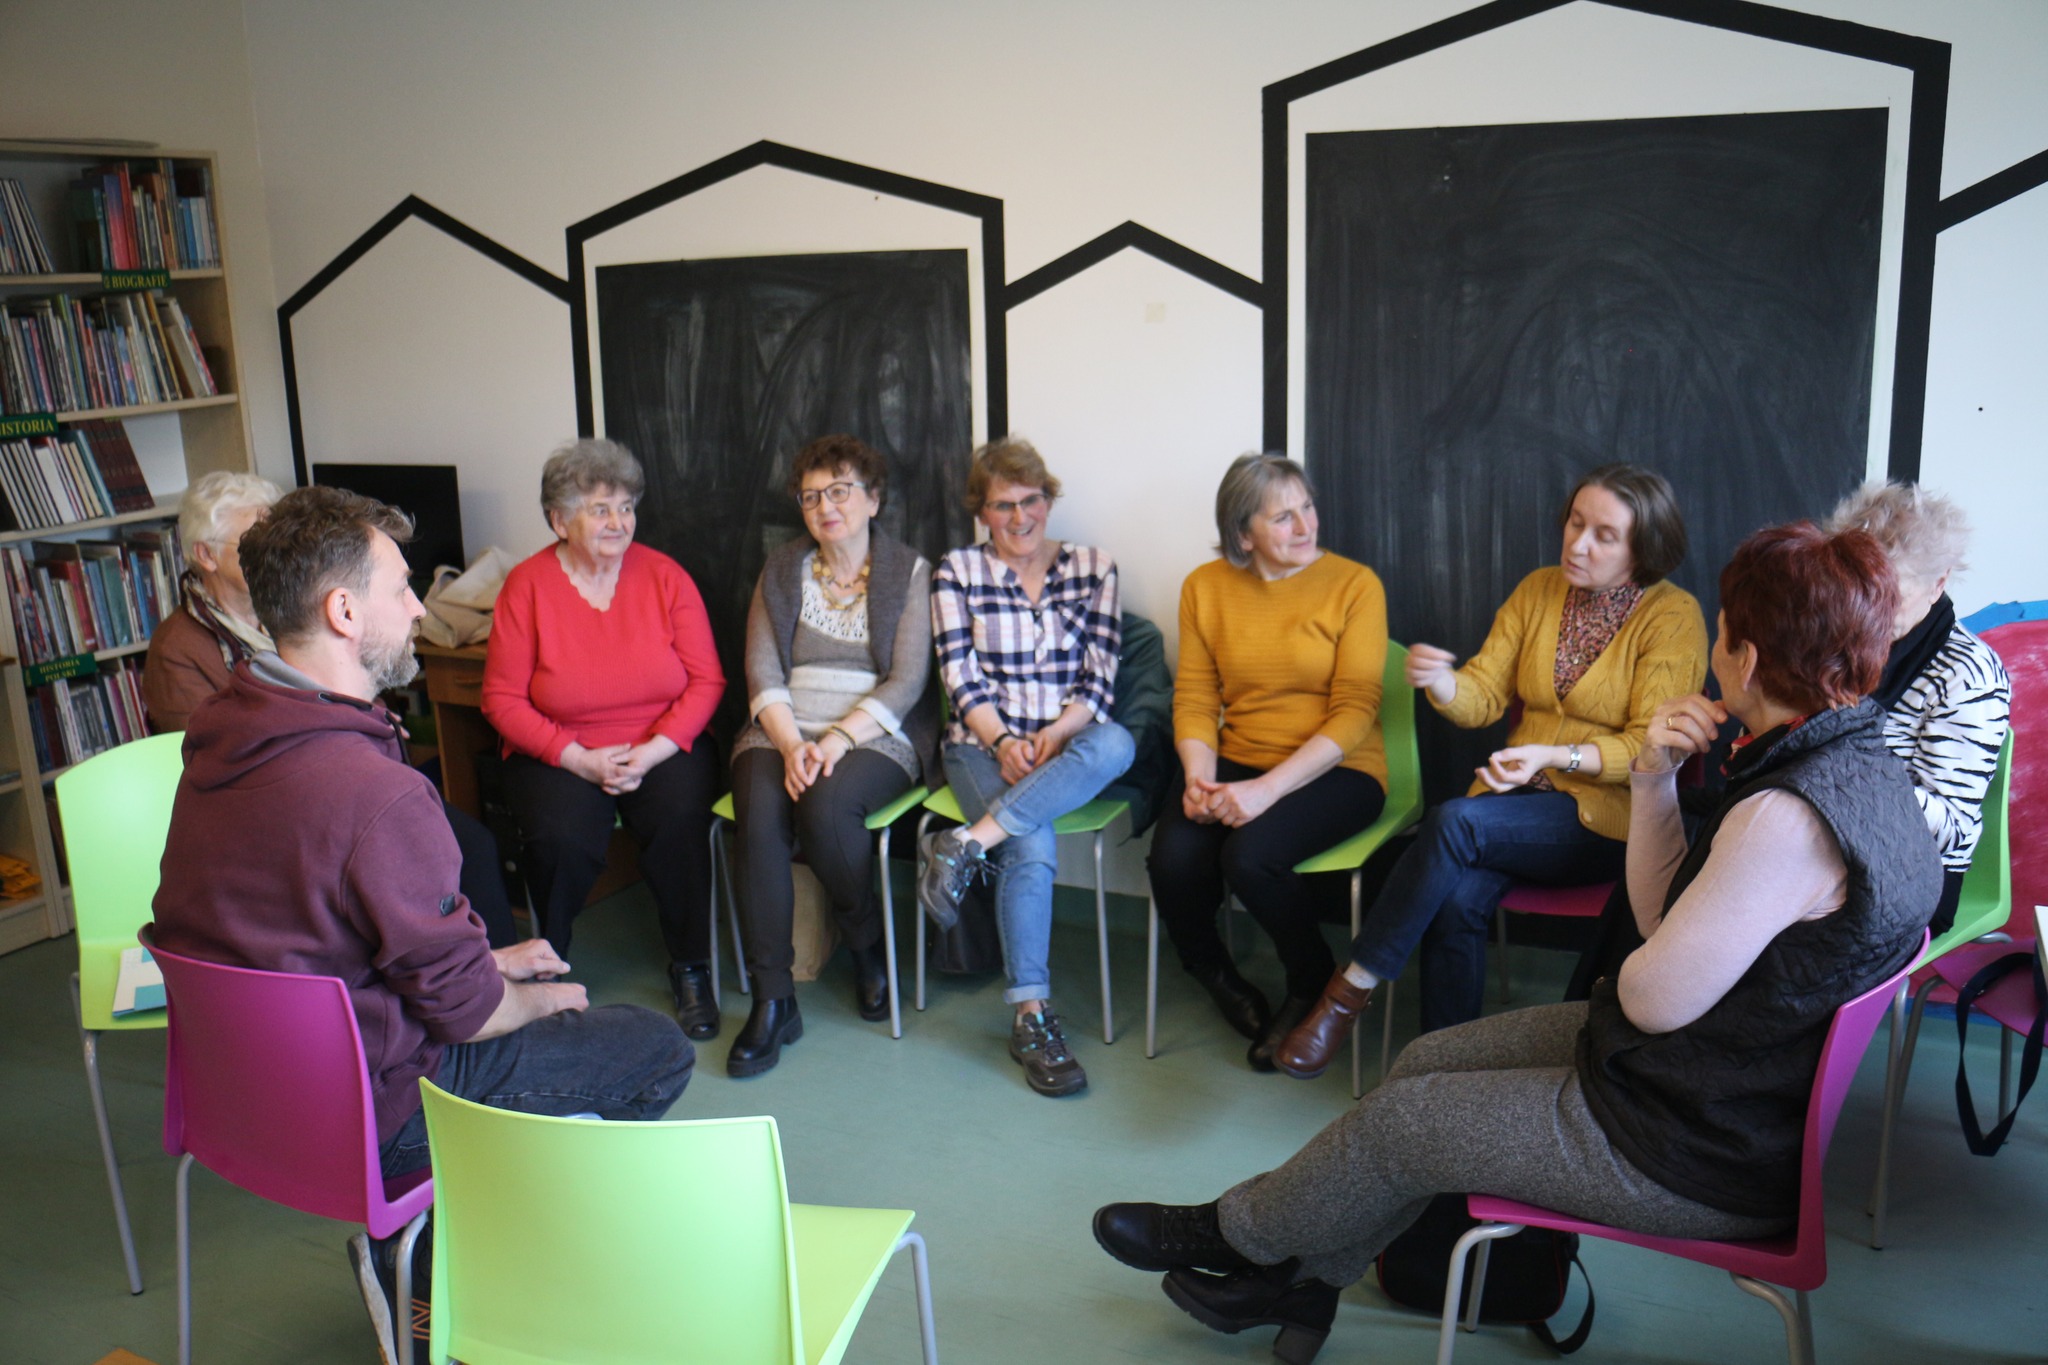 Czytelnia biblioteki. Projekt 6 stacji Coolturalnej Generacji - stacja Teatr. Grupa osób siedzi na krzesłach i dyskutuje.